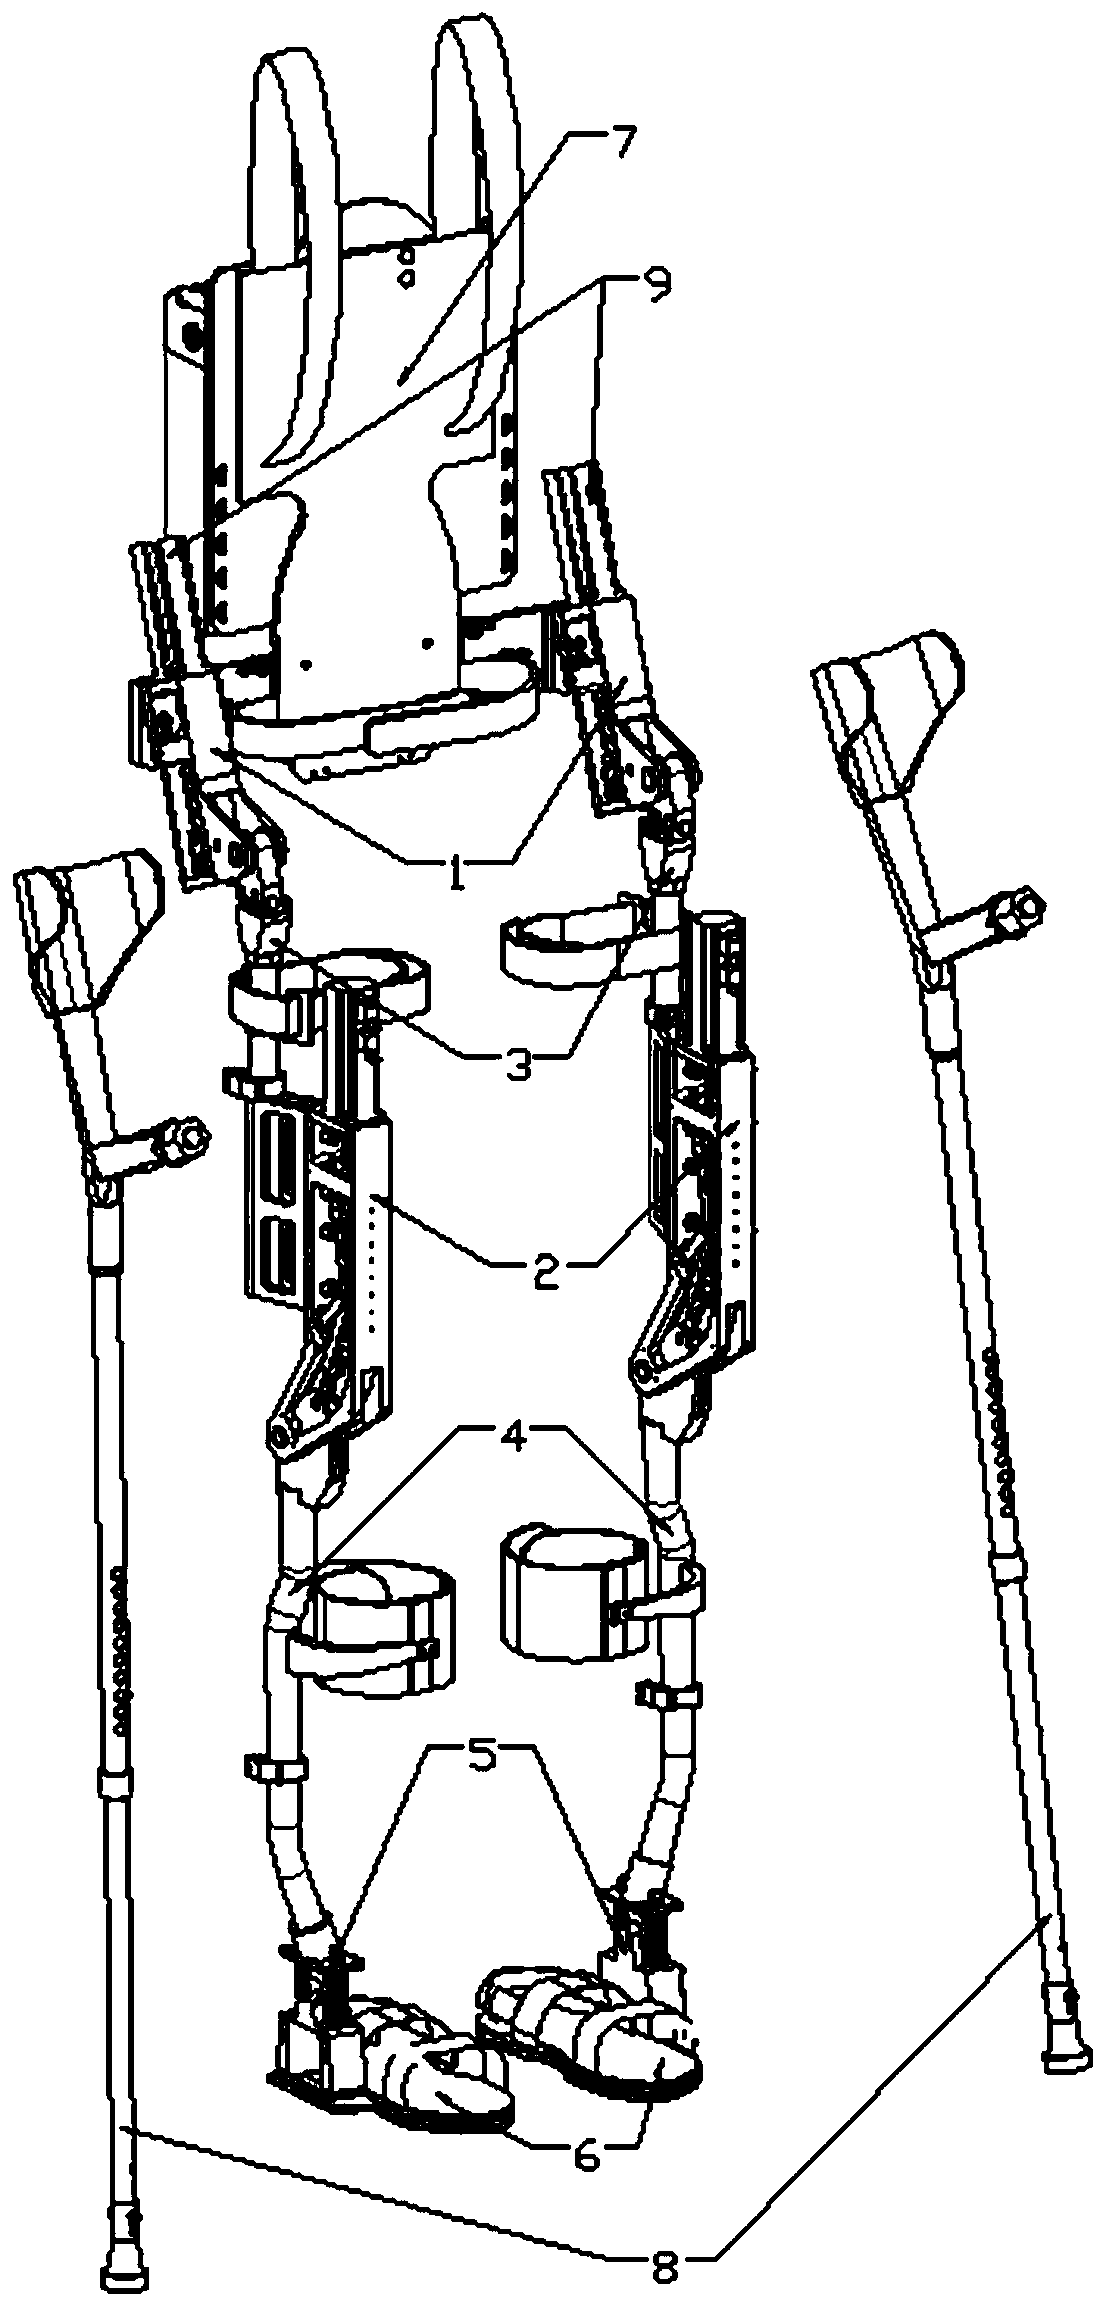 A rehabilitation lower extremity exoskeleton